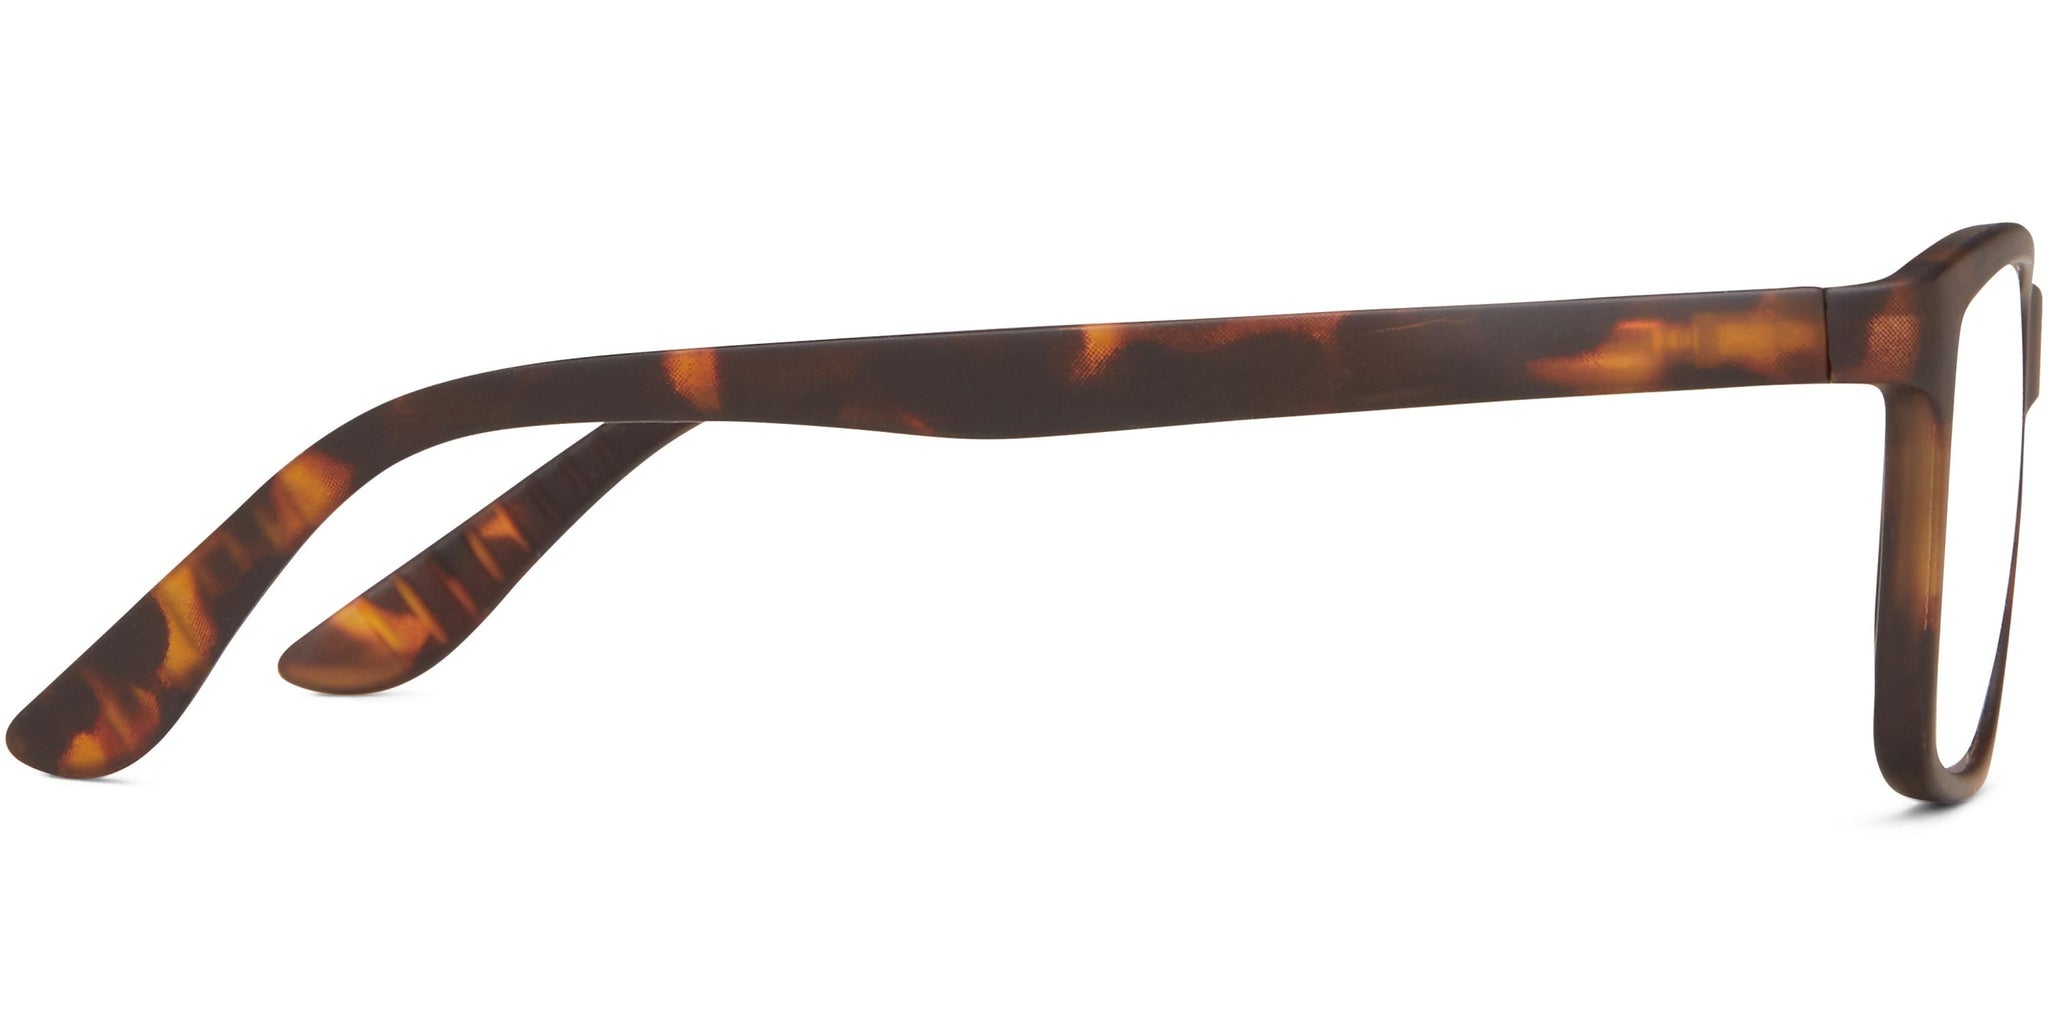 Luca Transparent Teal Square Sunglasses